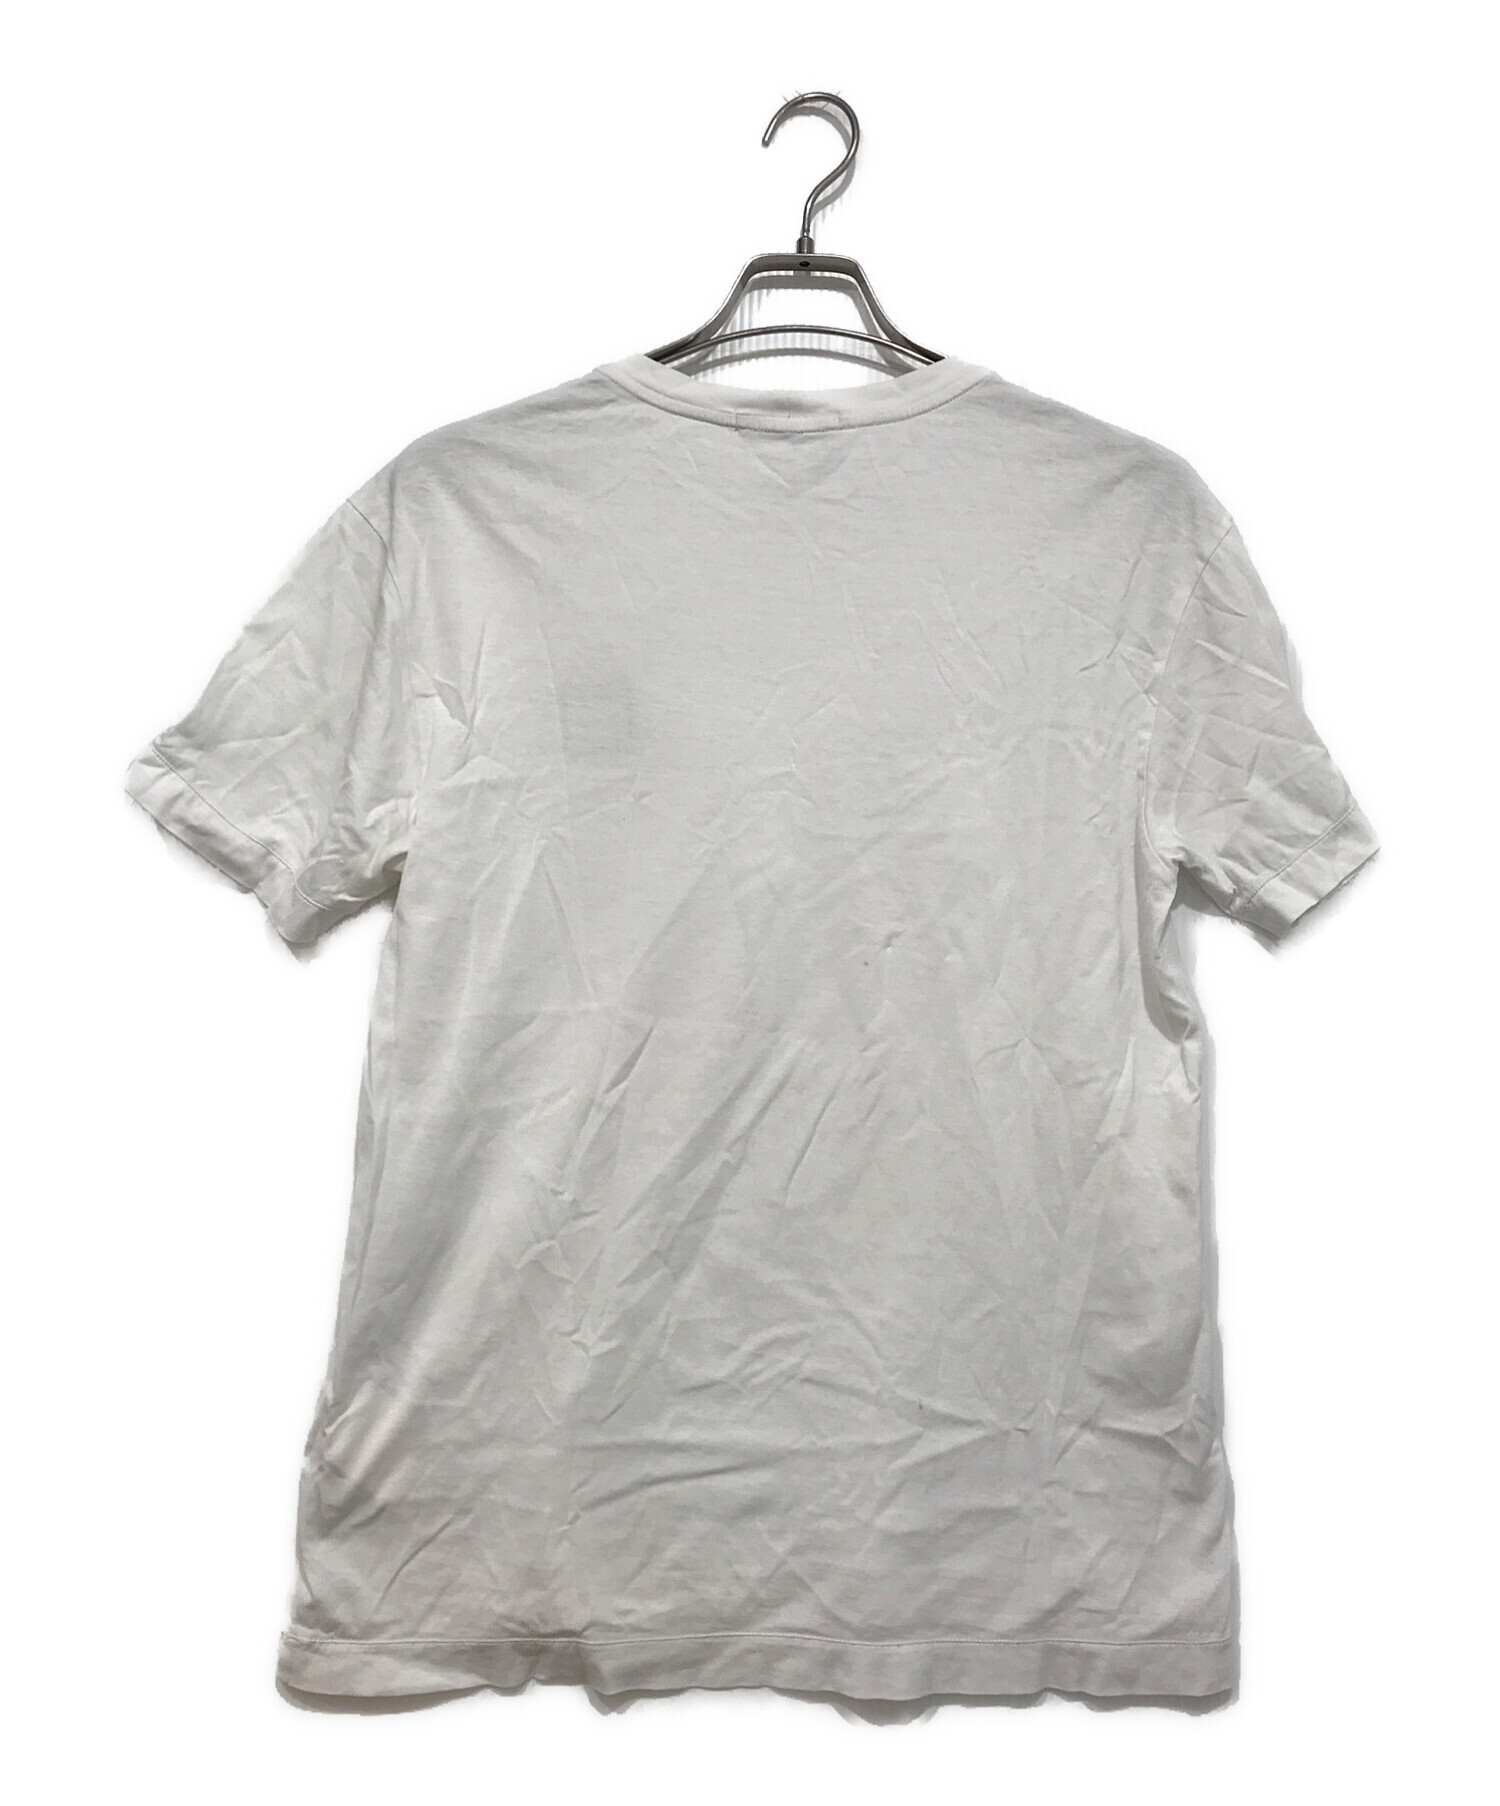 STONE ISLAND (ストーンアイランド) ワンポイントロゴTシャツ ホワイト サイズ:S